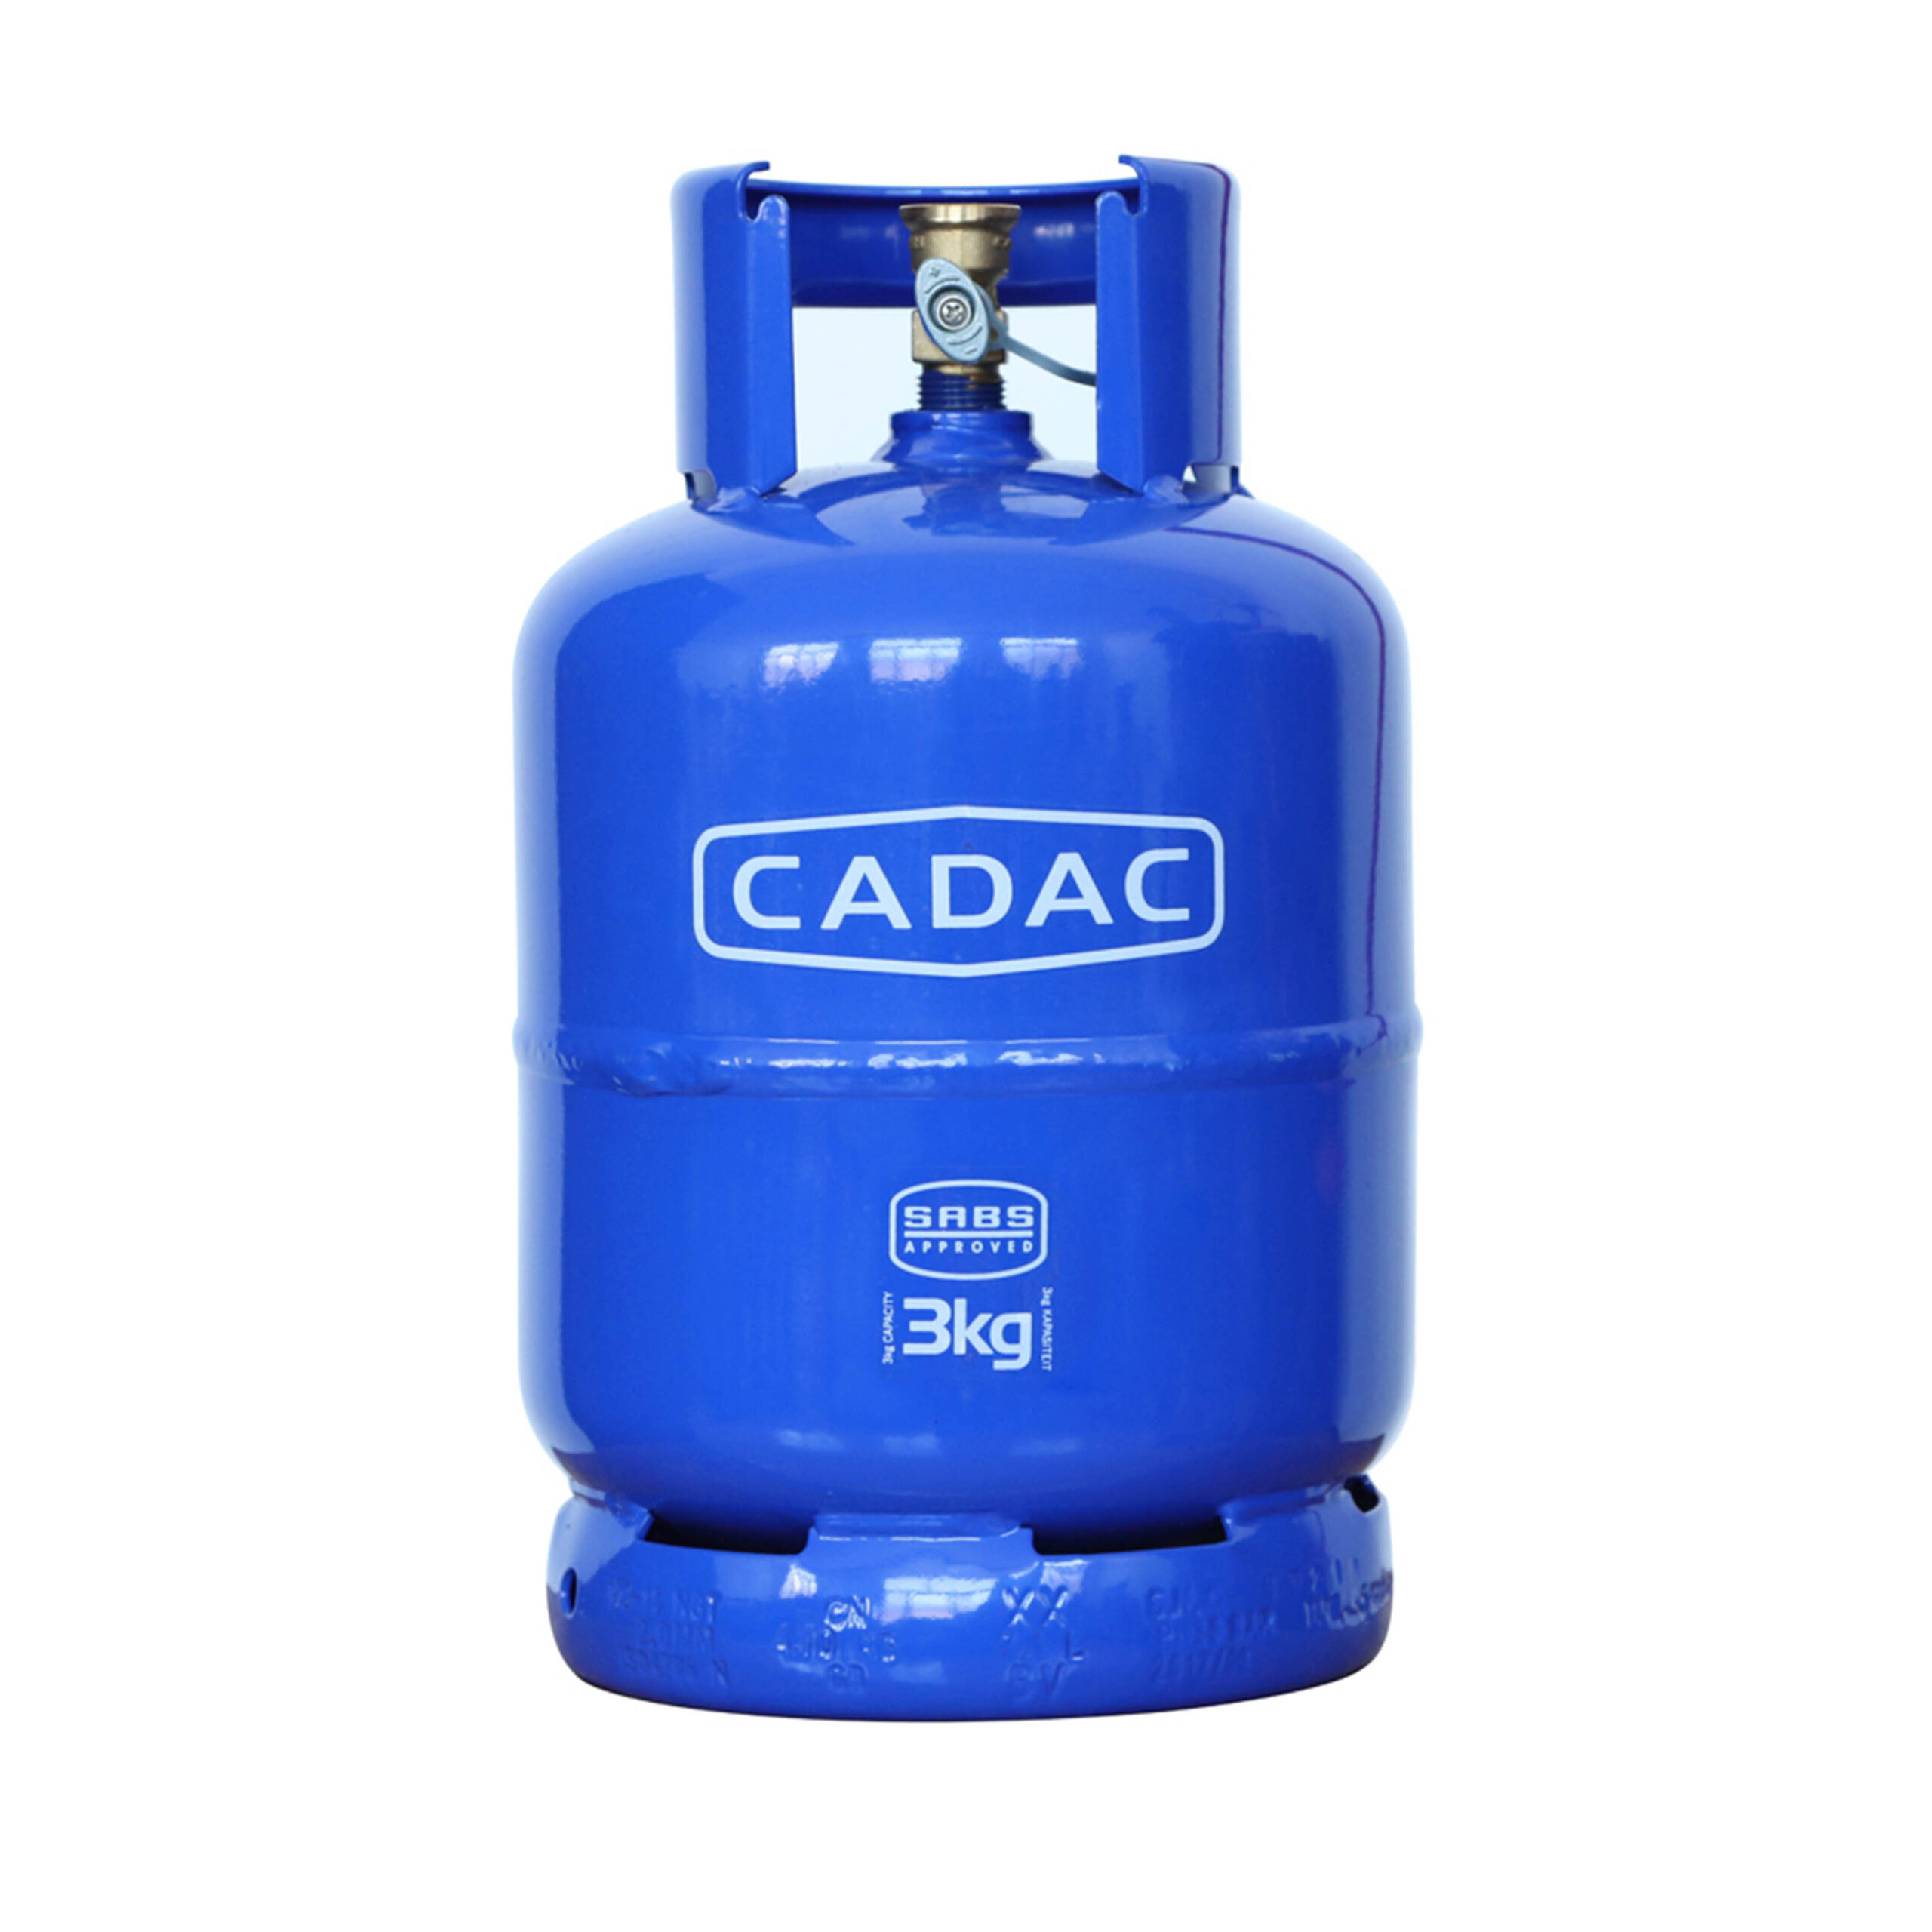 CADAC  3KG GAS
CYLINDER ONLY